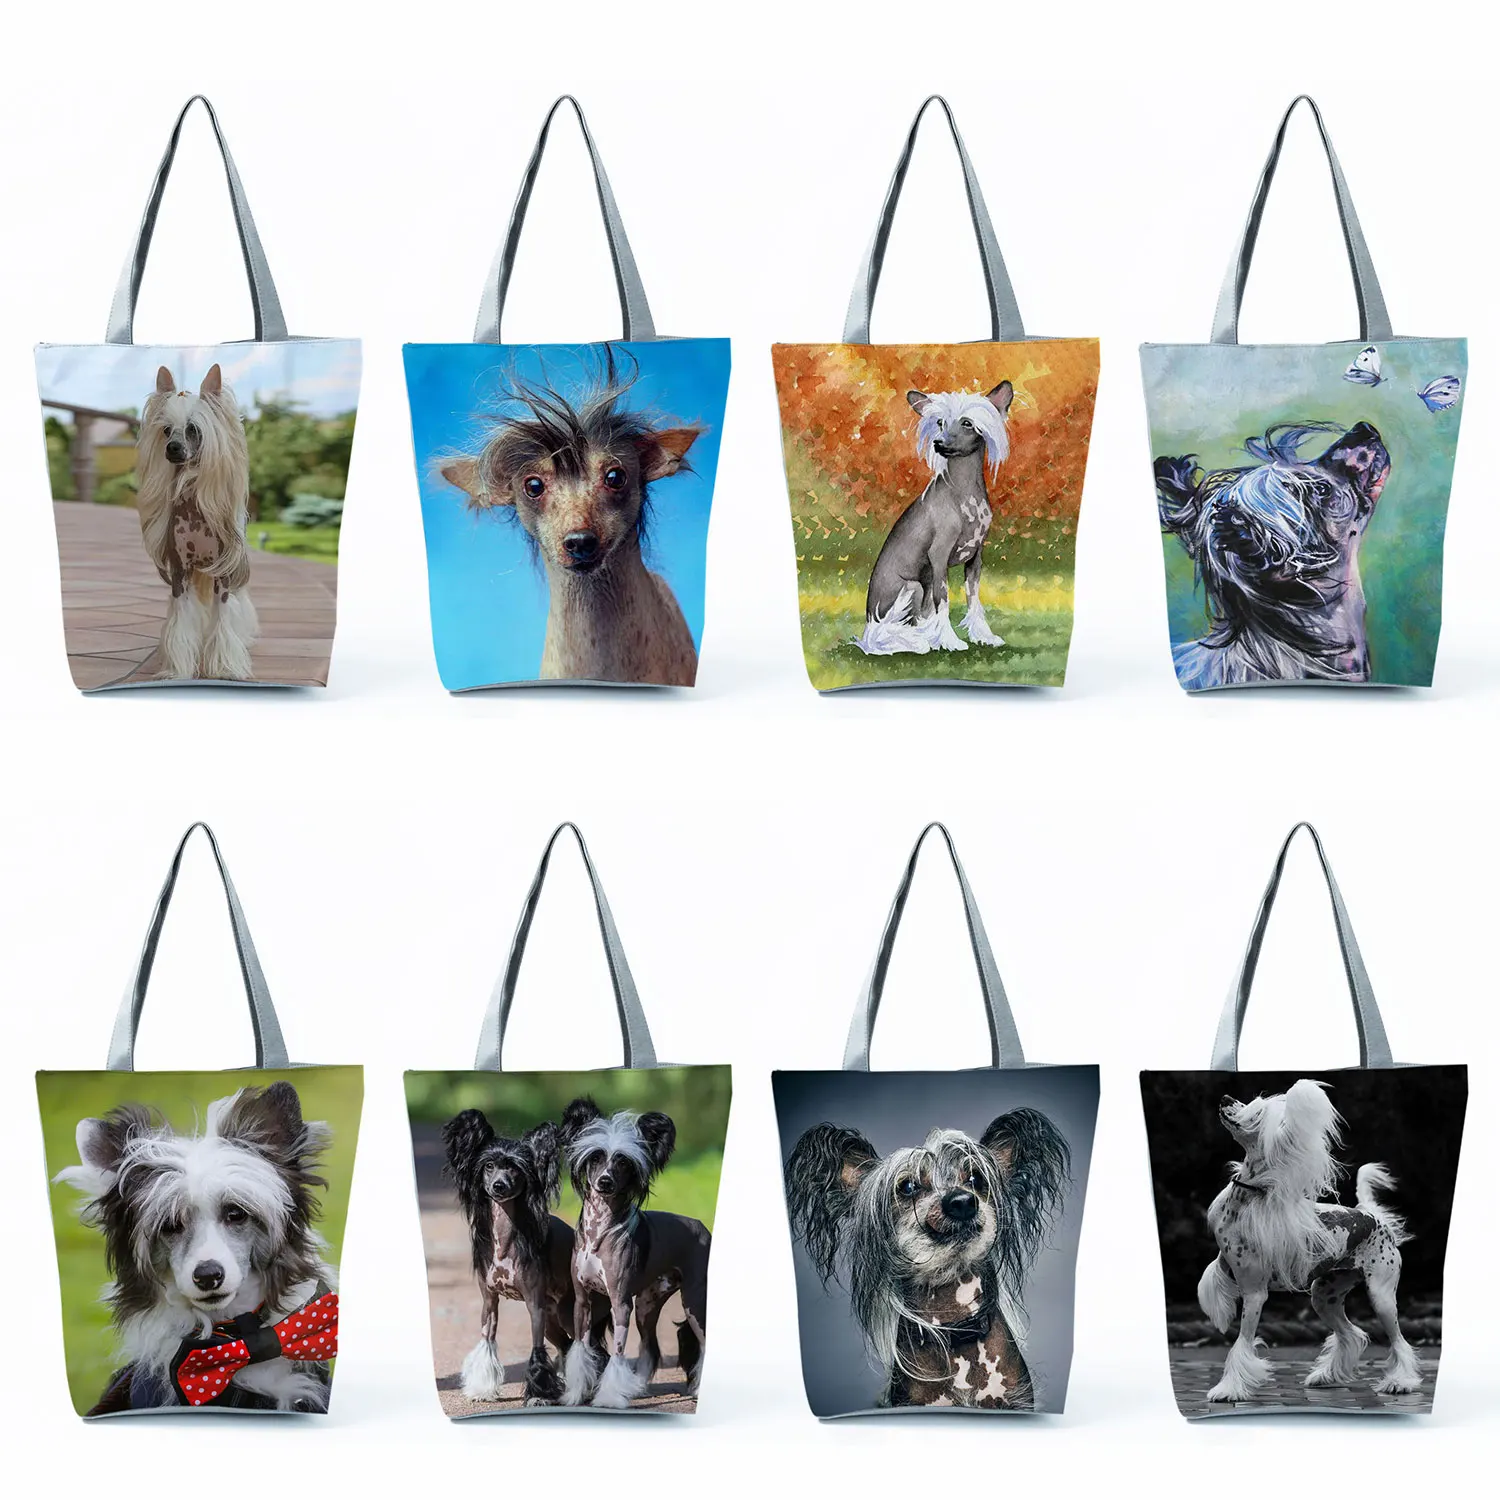 

Китайские сумочки с рисунком хохлатых, модные женские сумки-тоуты, дорожные пляжные сумки с графическим принтом для собак, вместительные экологически чистые многоразовые сумки для покупок